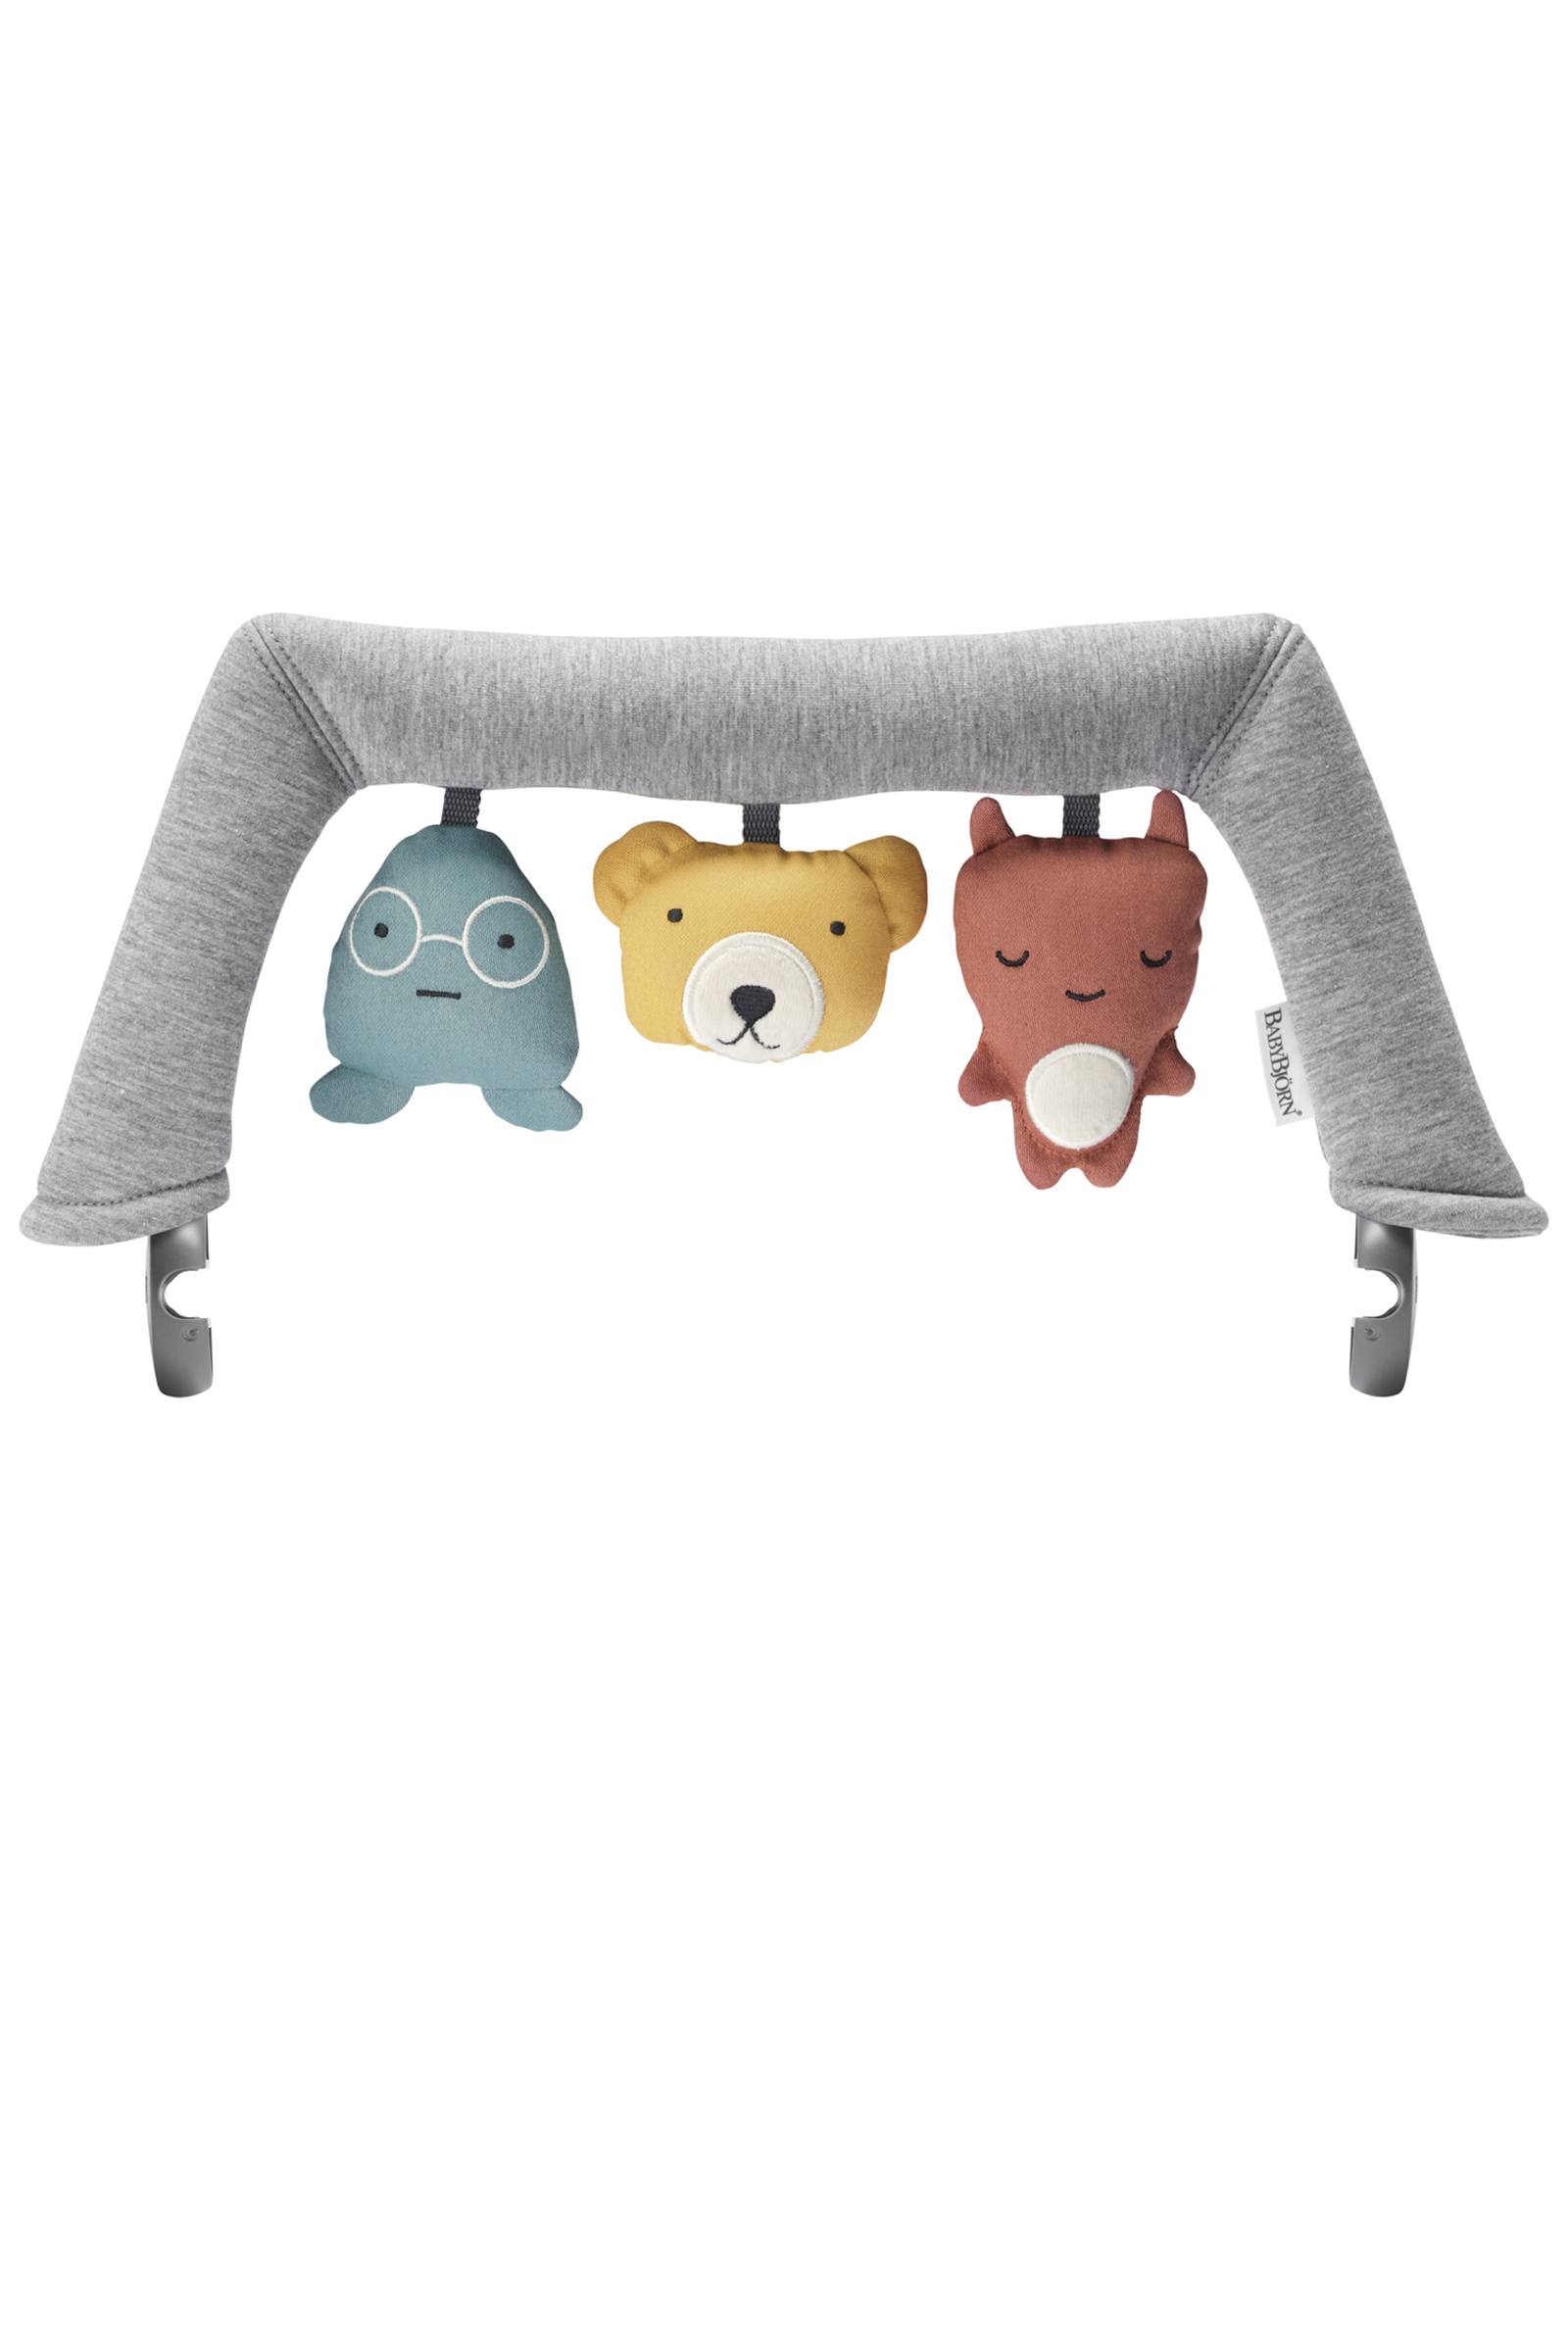 BabyBjörn 嬰兒搖椅專用玩具 瑞典製造-Soft Friends-Suchprice® 優價網